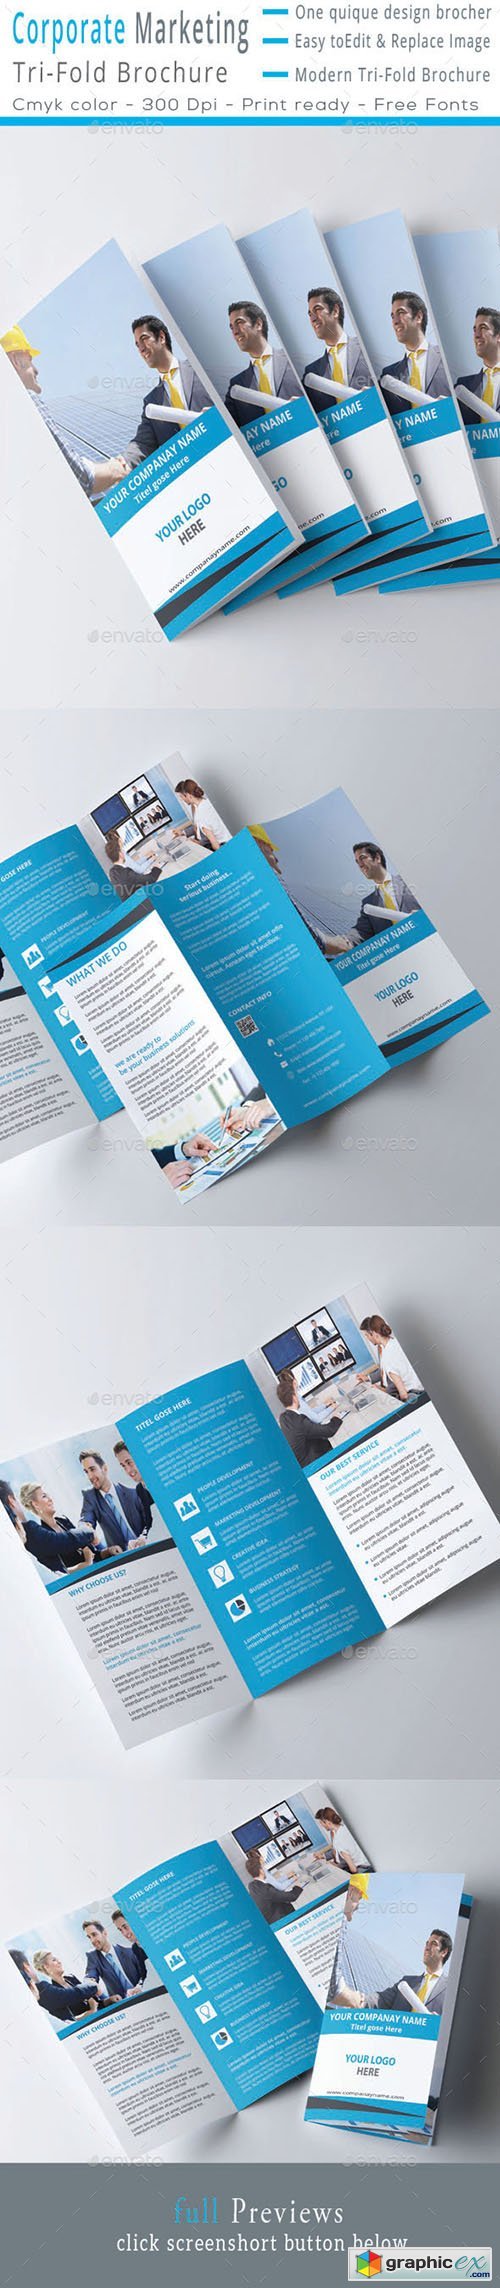 Corporate MarketingTri-Fold Brochure